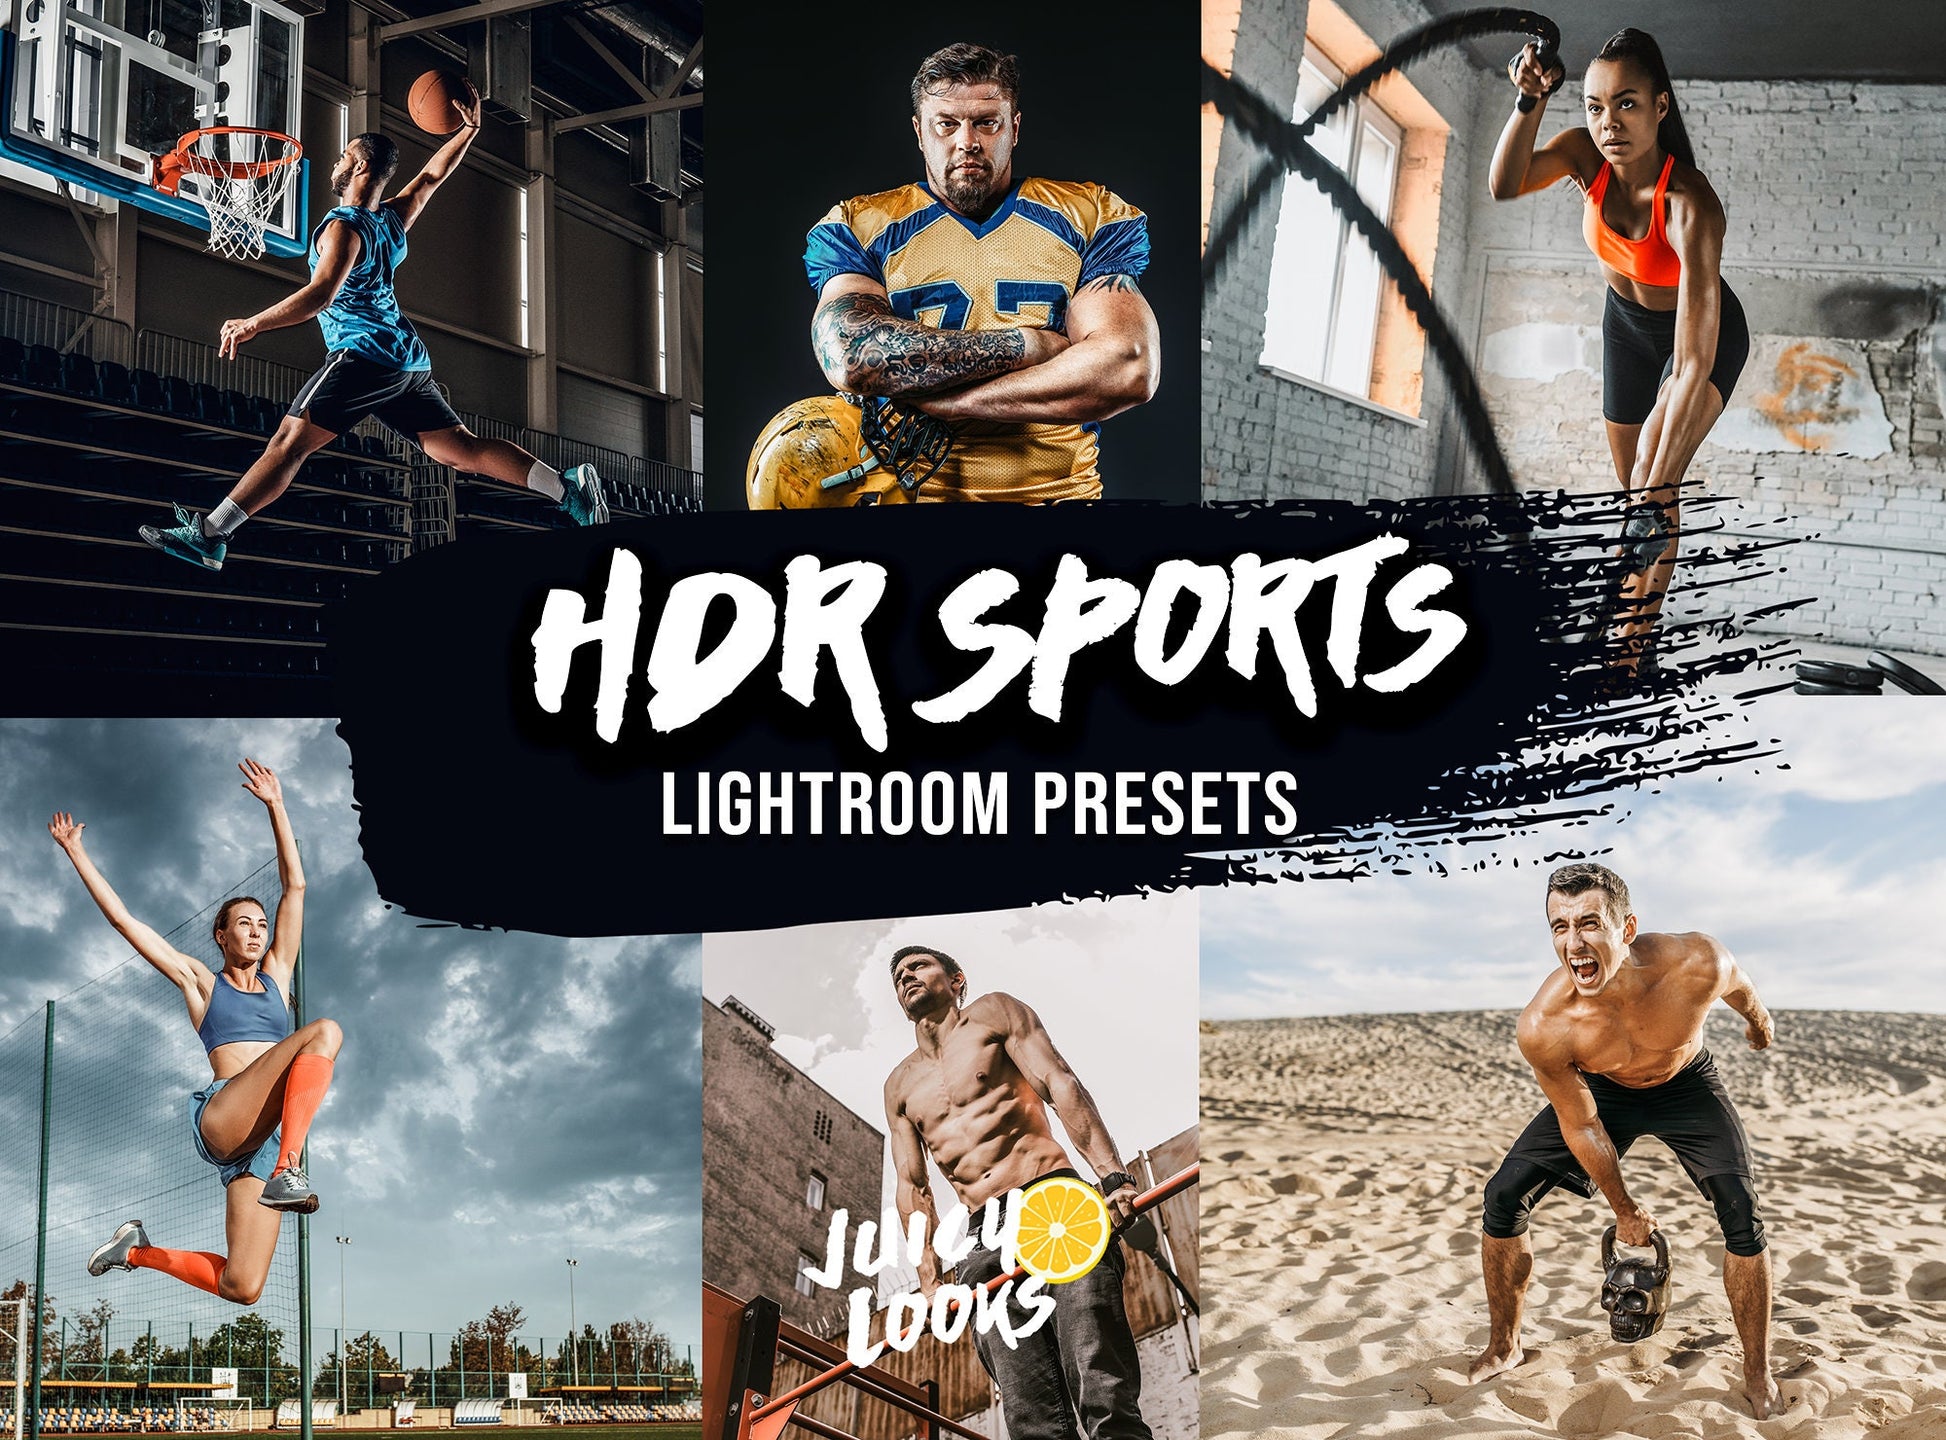 HDR Sports Lightroom Presets for Mobile & Desktop - Juicy Looks Presets